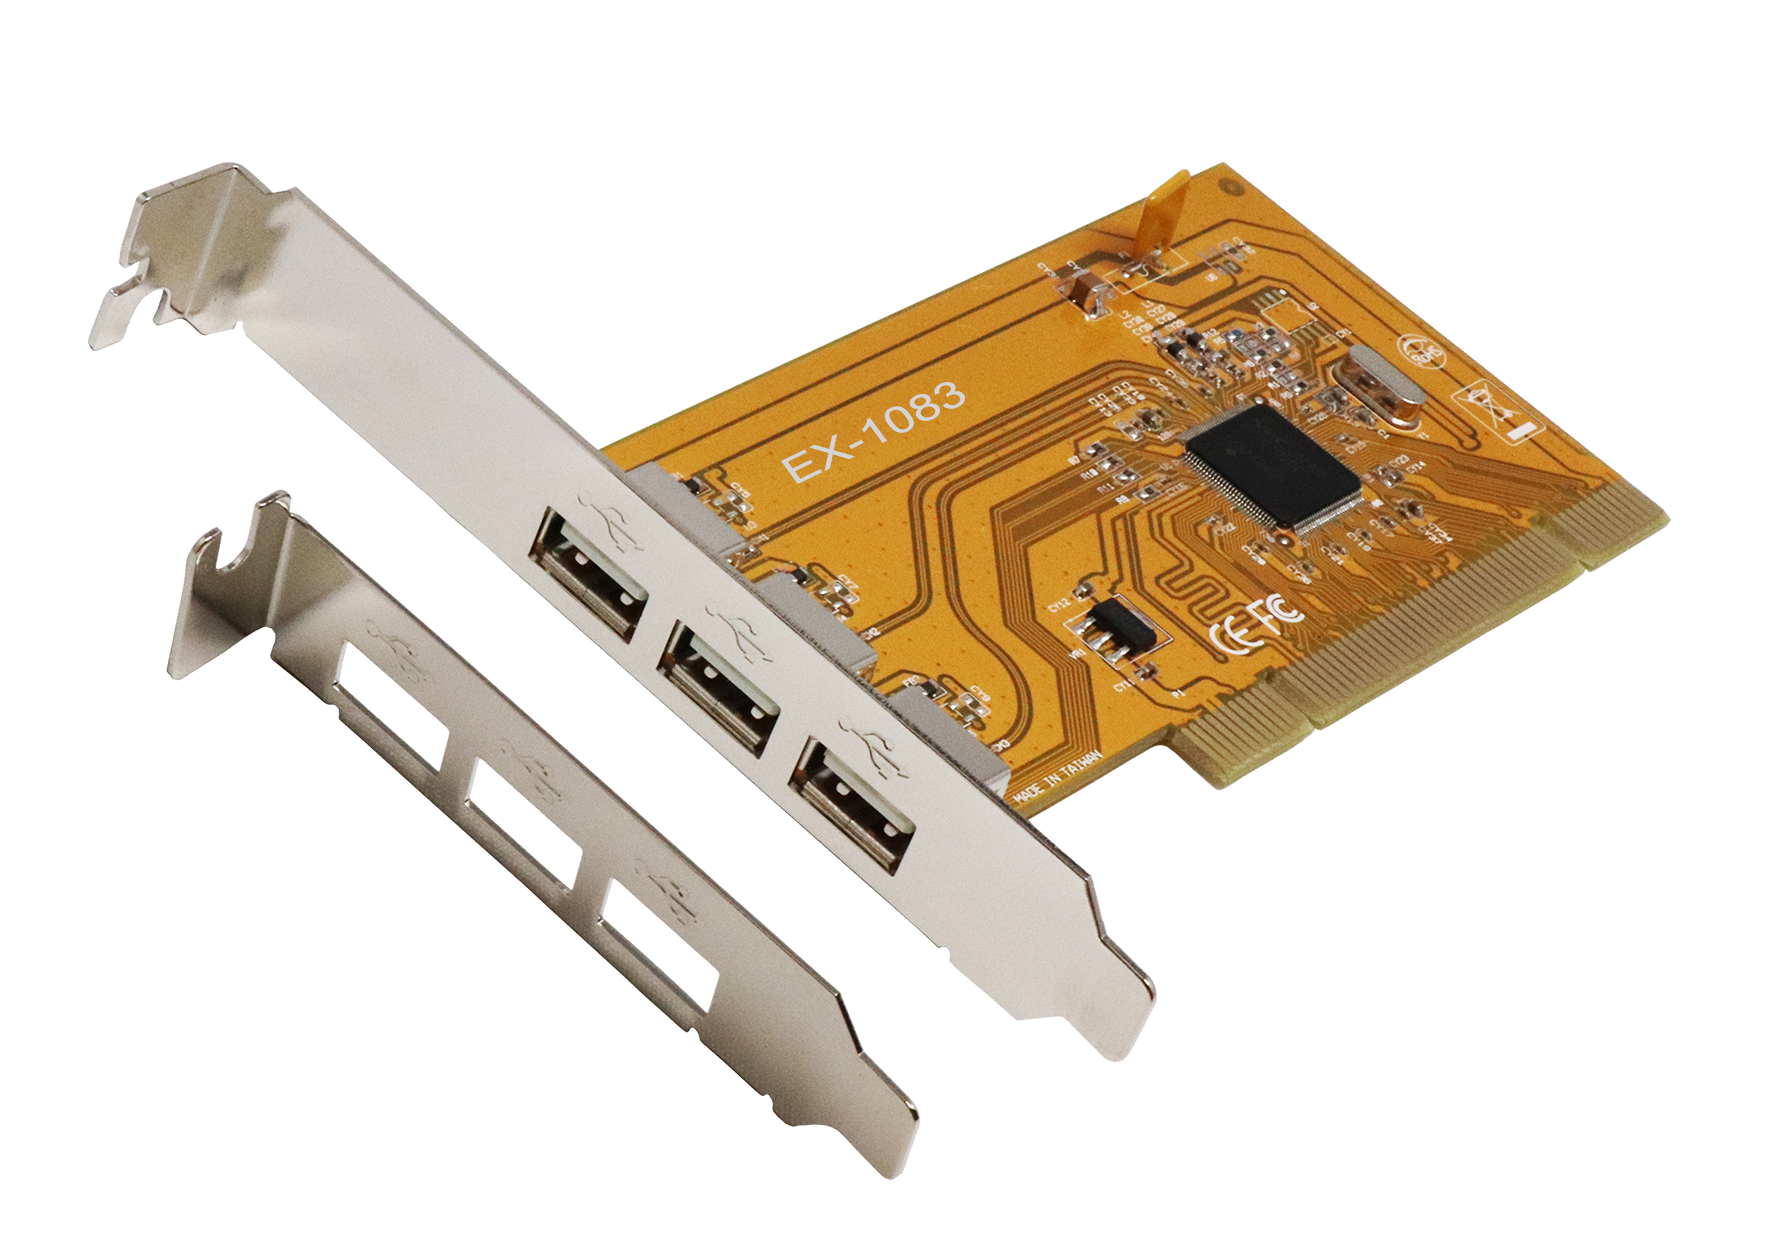 2 Ports USB 3 PCI-E kalea-informatique PCI-Express-Karte Low und High Profile im Lieferumfang enthalten 19 Pins auf USB 3.0 NEC Chipsatz 